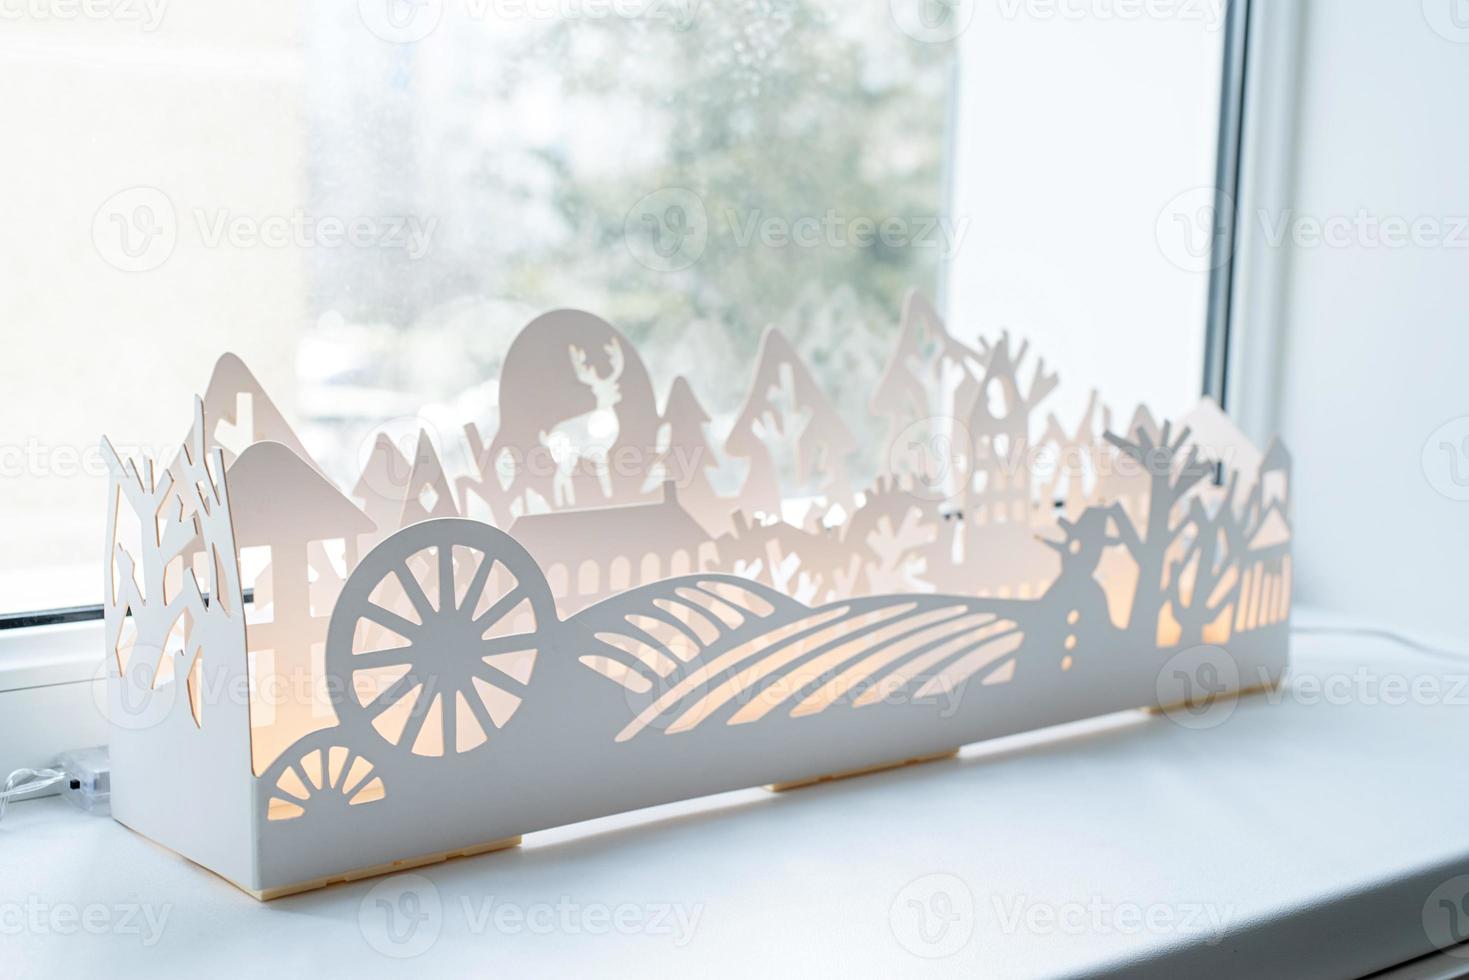 papel branco bonito ou decoração de inverno de plástico com luzes no peitoril da janela foto